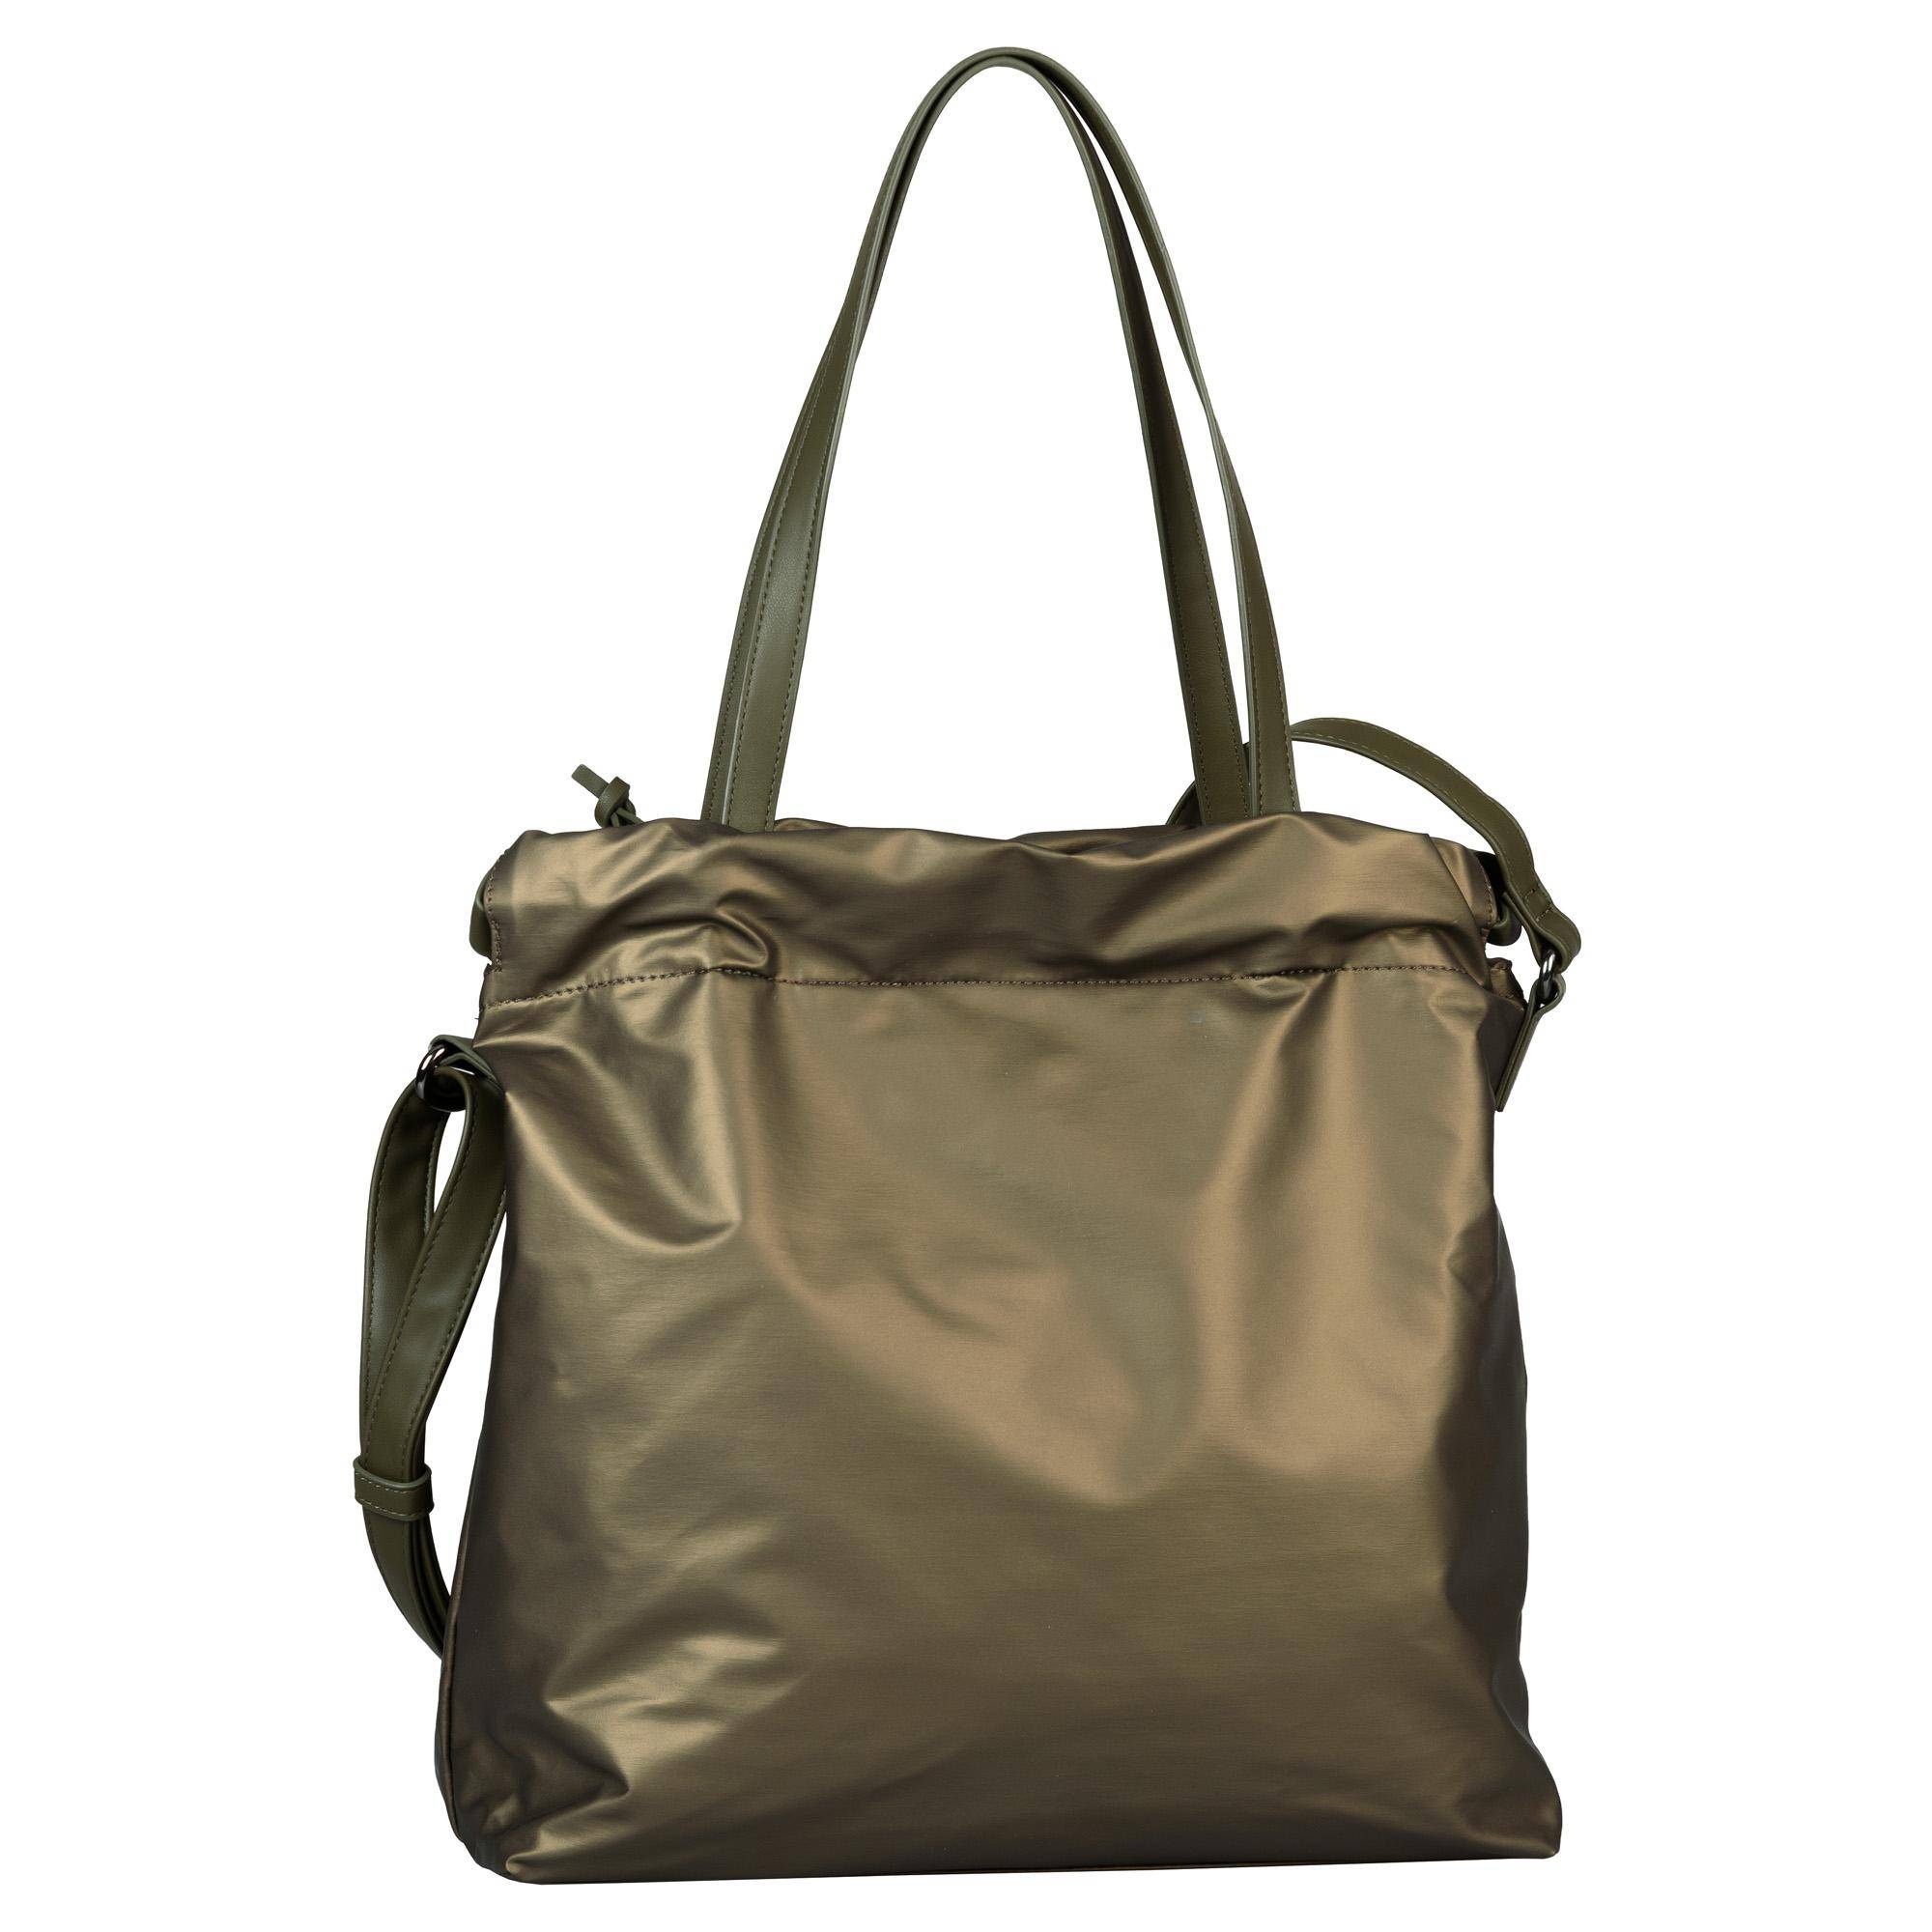 Женская сумка шоппер Tom Tailor Bags, хаки, Хаки  - купить